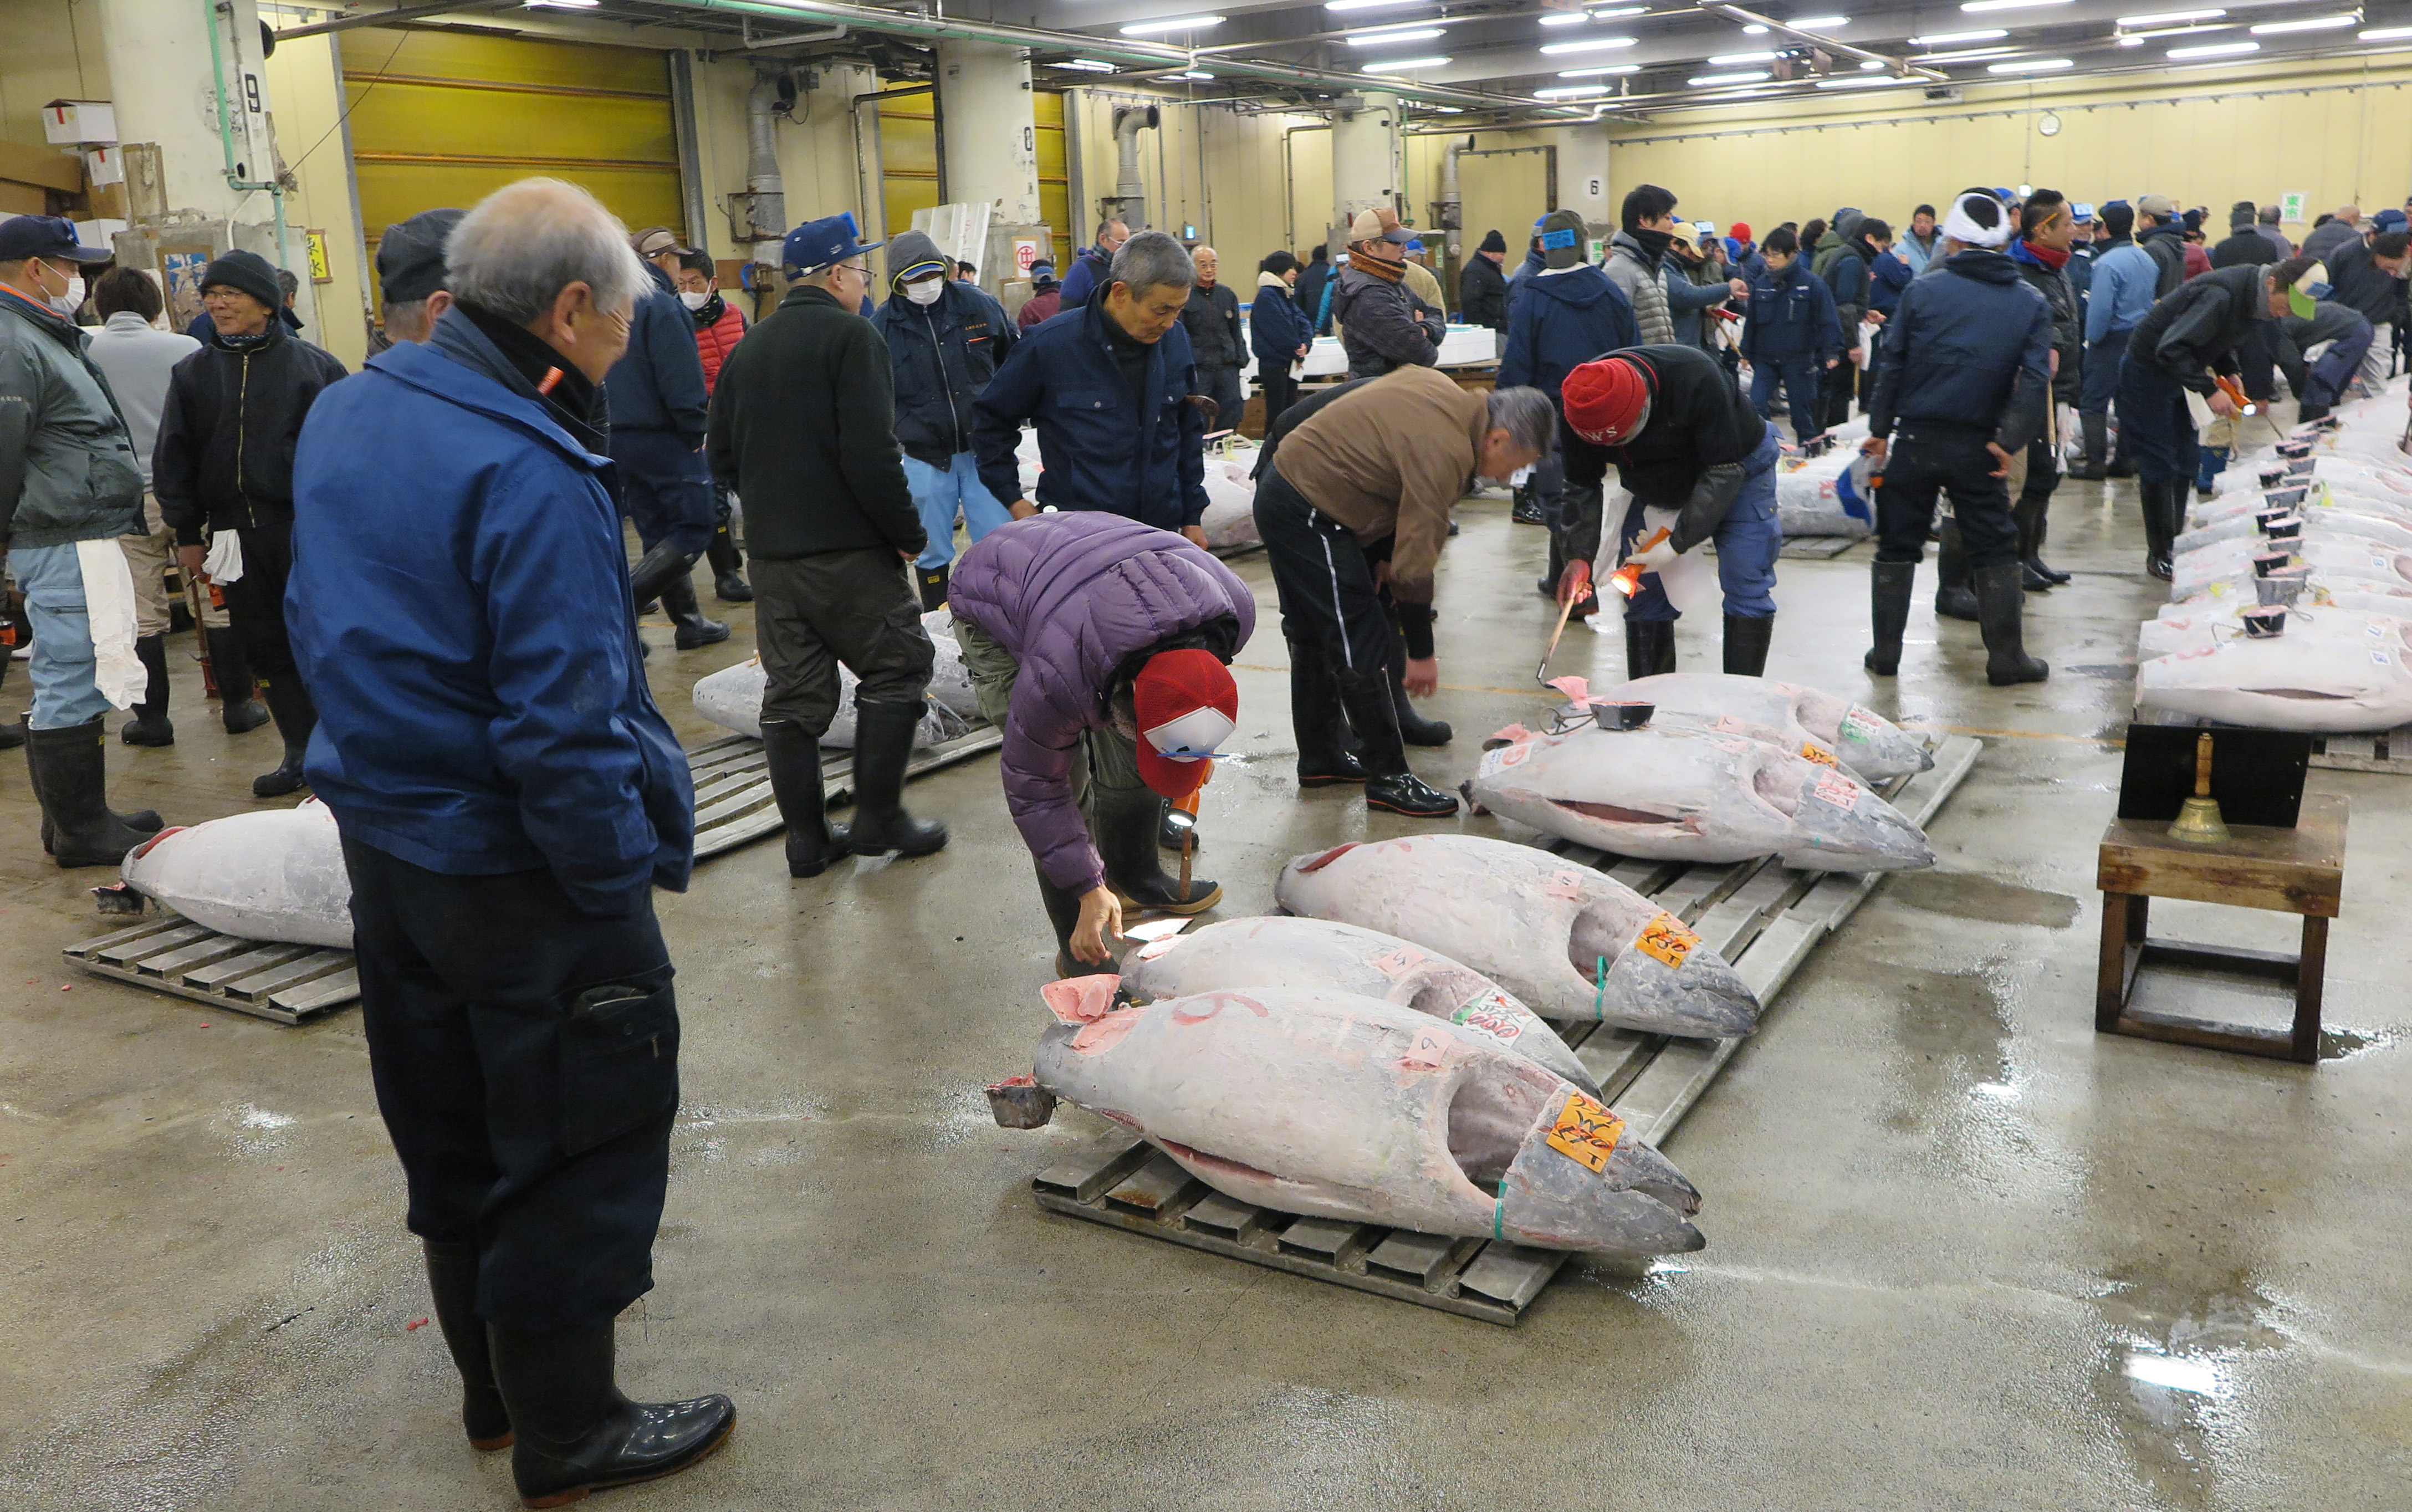 تم صيد السمكة، التي يبلغ وزنها 211 كيلوجراما، في أوما، وهي من أفضل مناطق صيد التونة في البلاد (د ب أ)